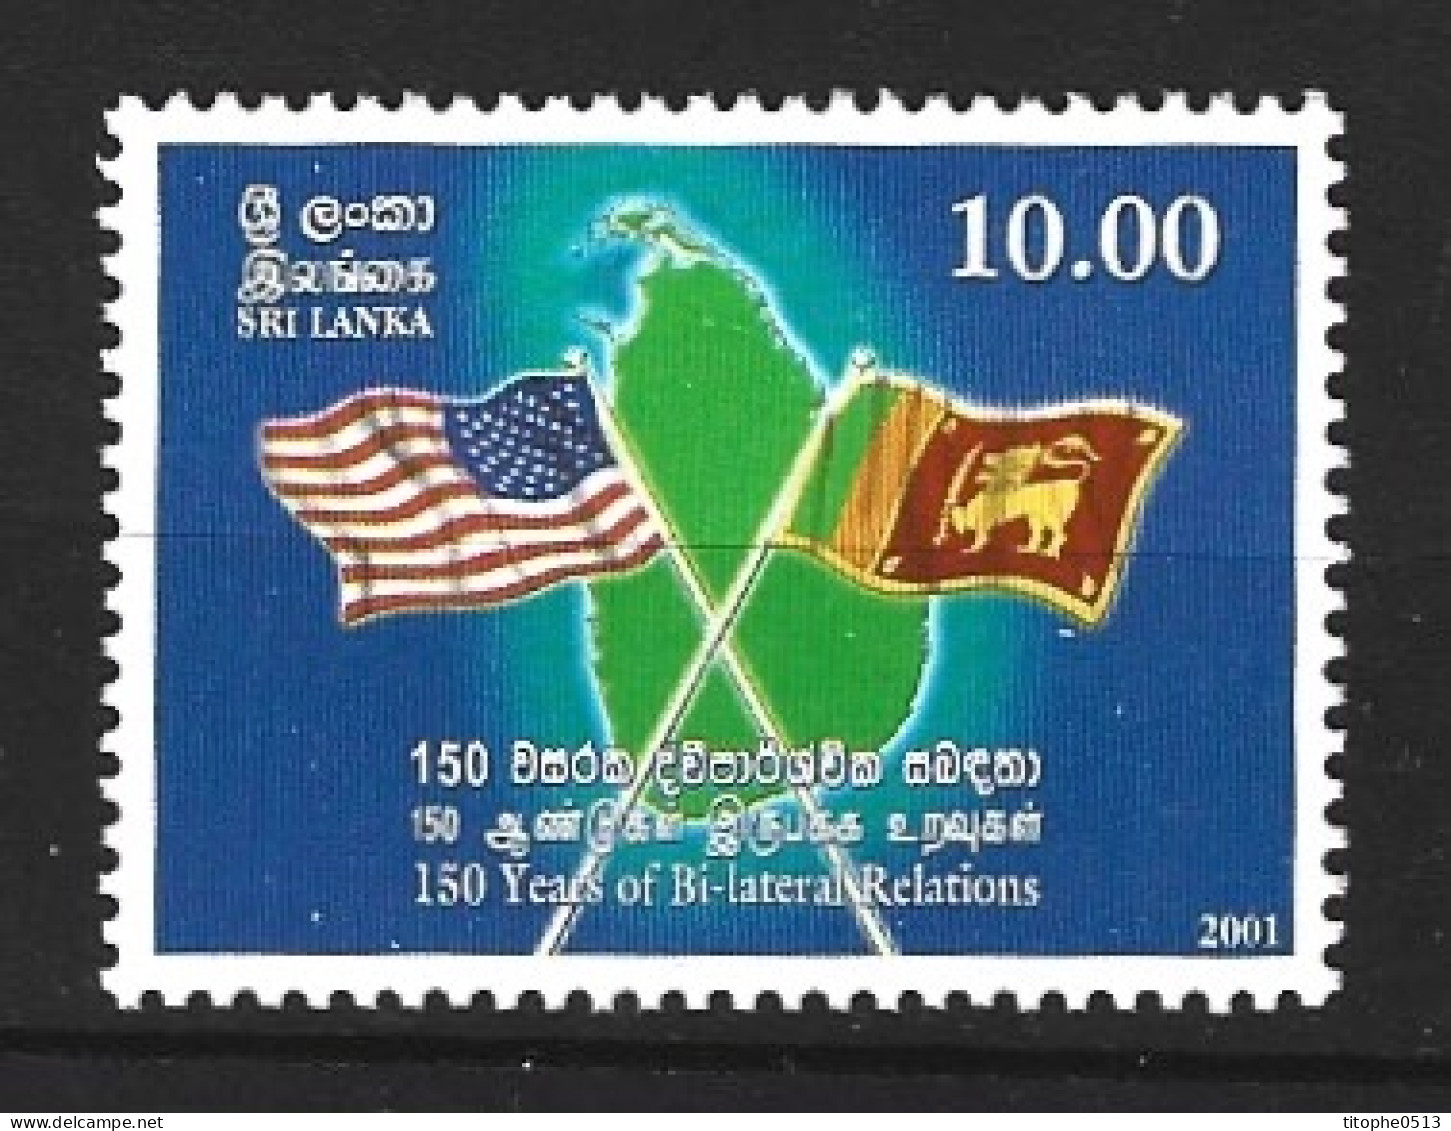 SRI LANKA. N°1268 De 2001. Drapeaux. - Stamps